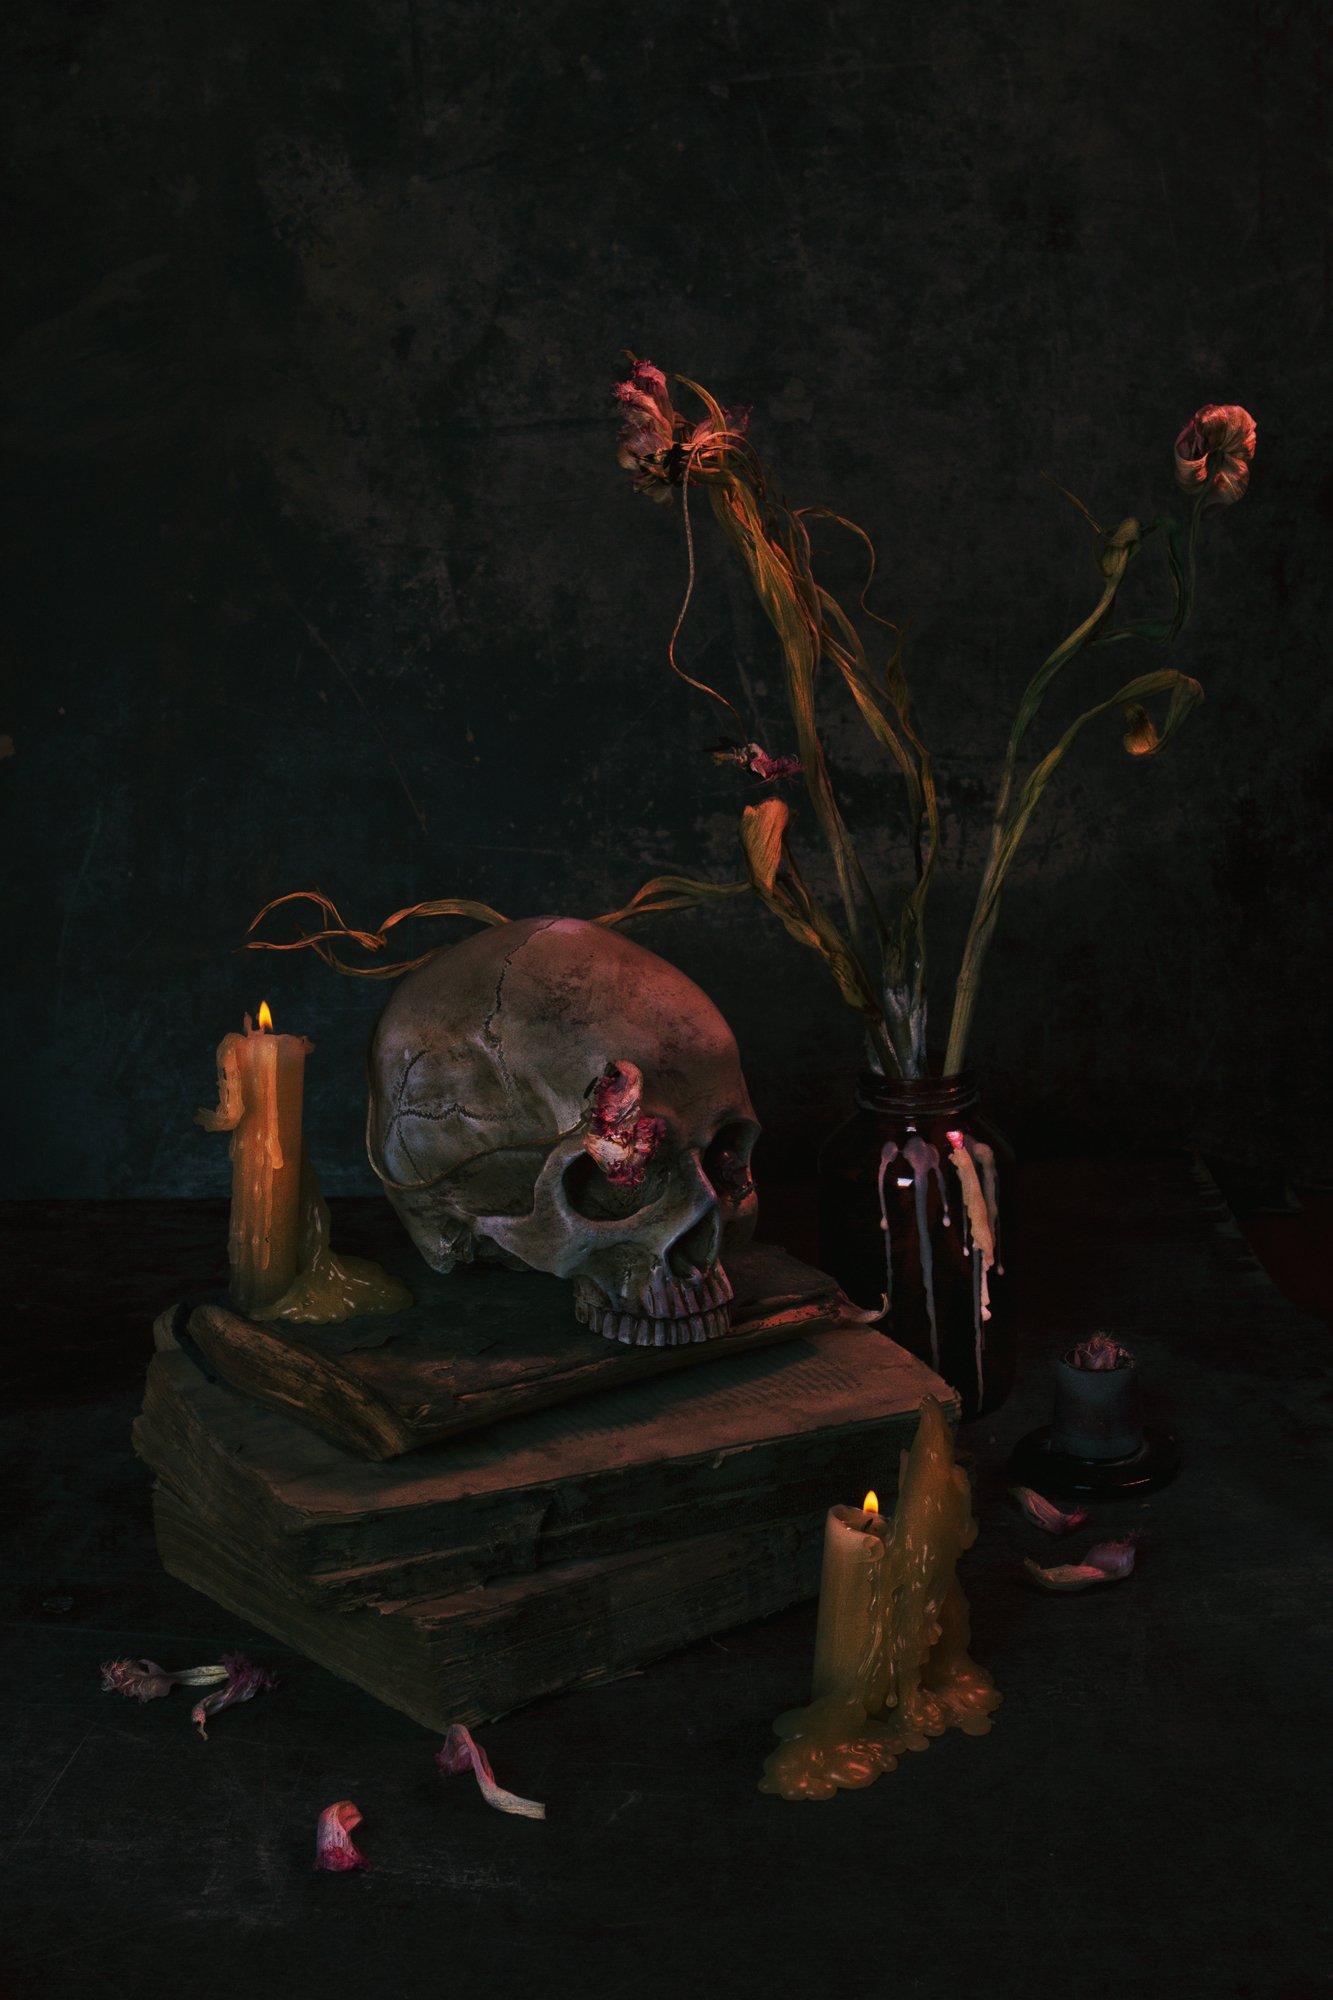 череп, цветы, тюльпаны, увядшие, натюрморт, жук, свеча, Наталья Голубева